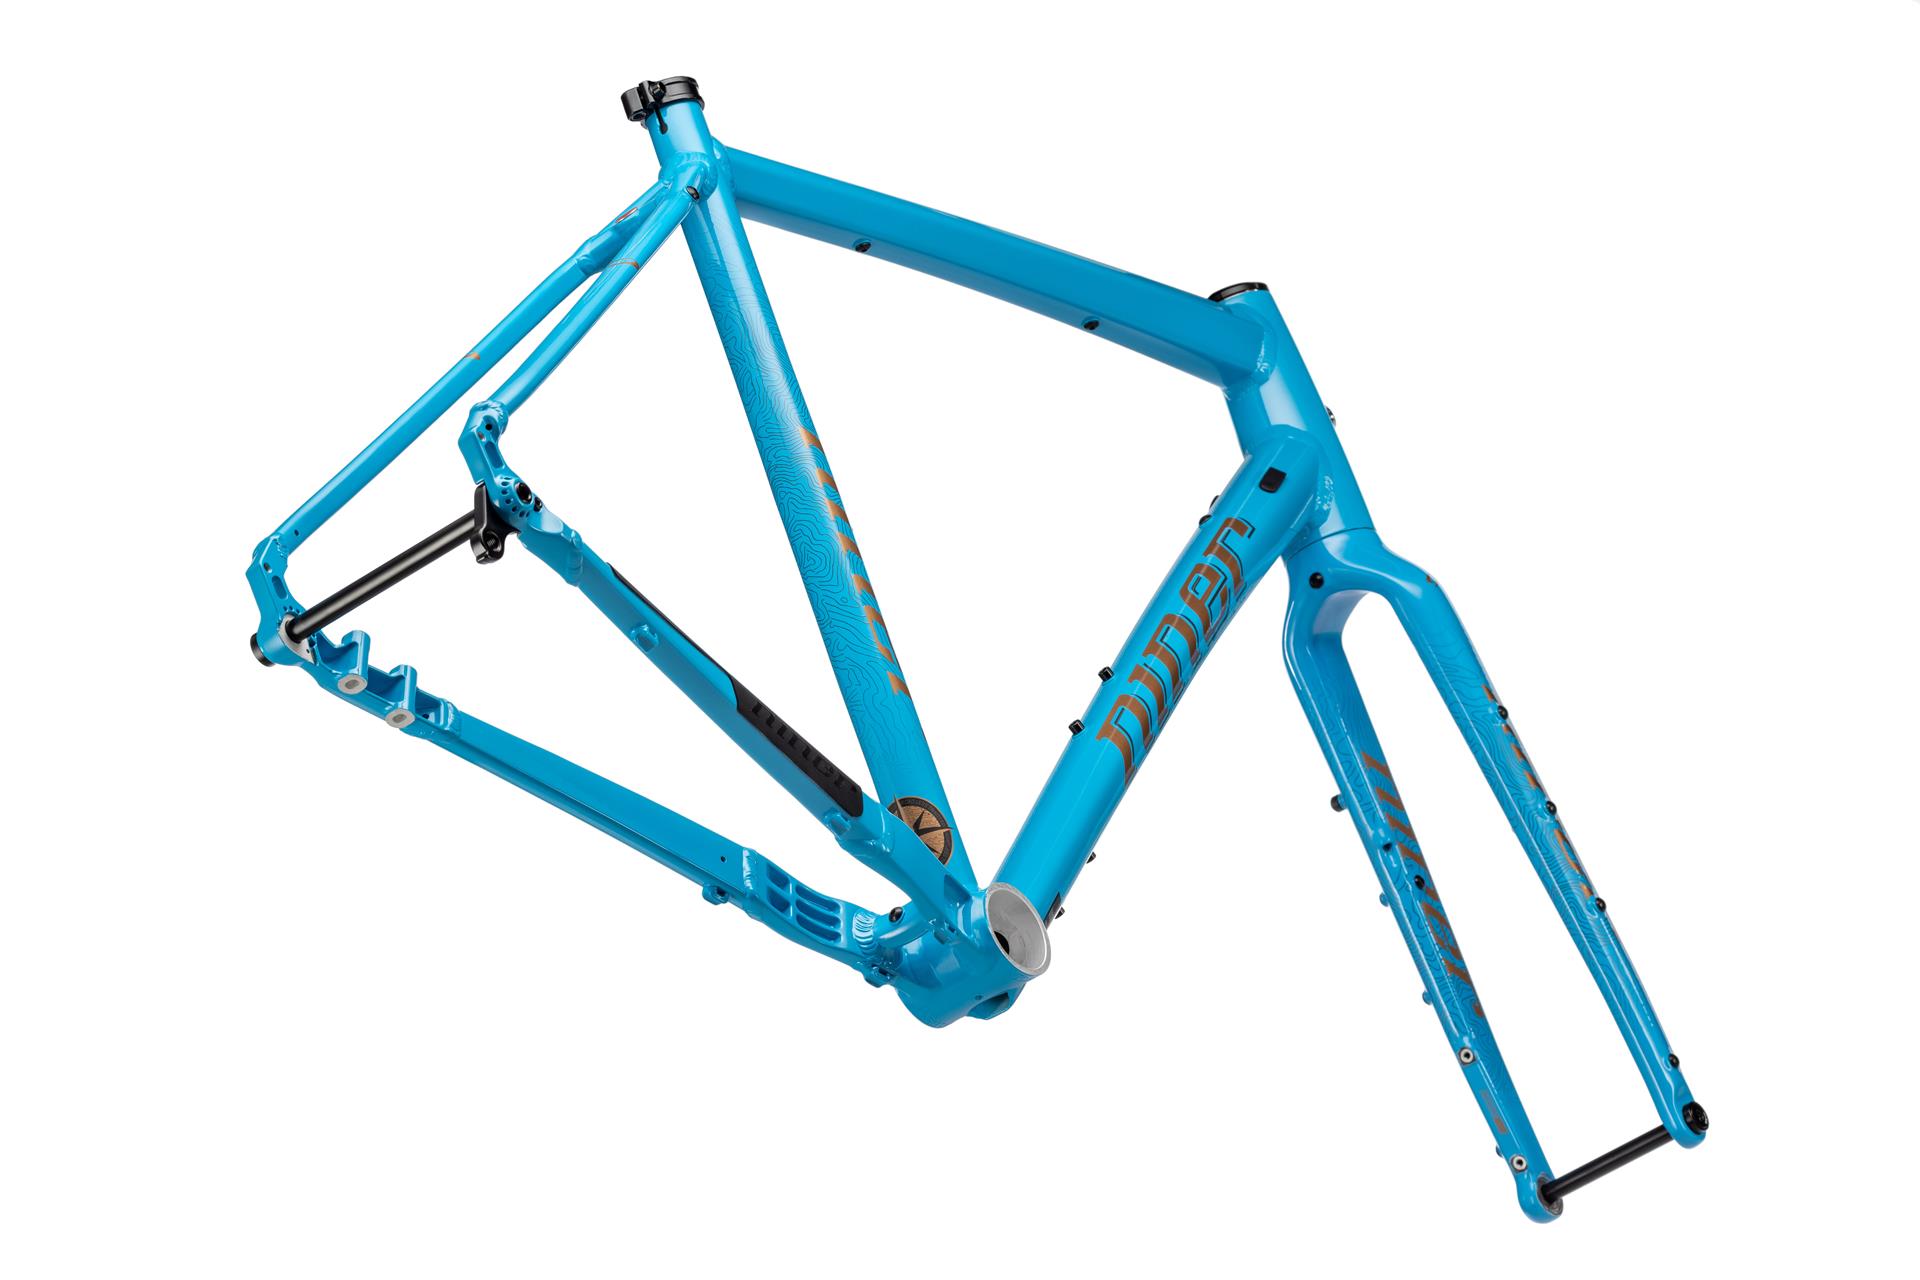 Niner RLT 2-star bike, Blue, 53